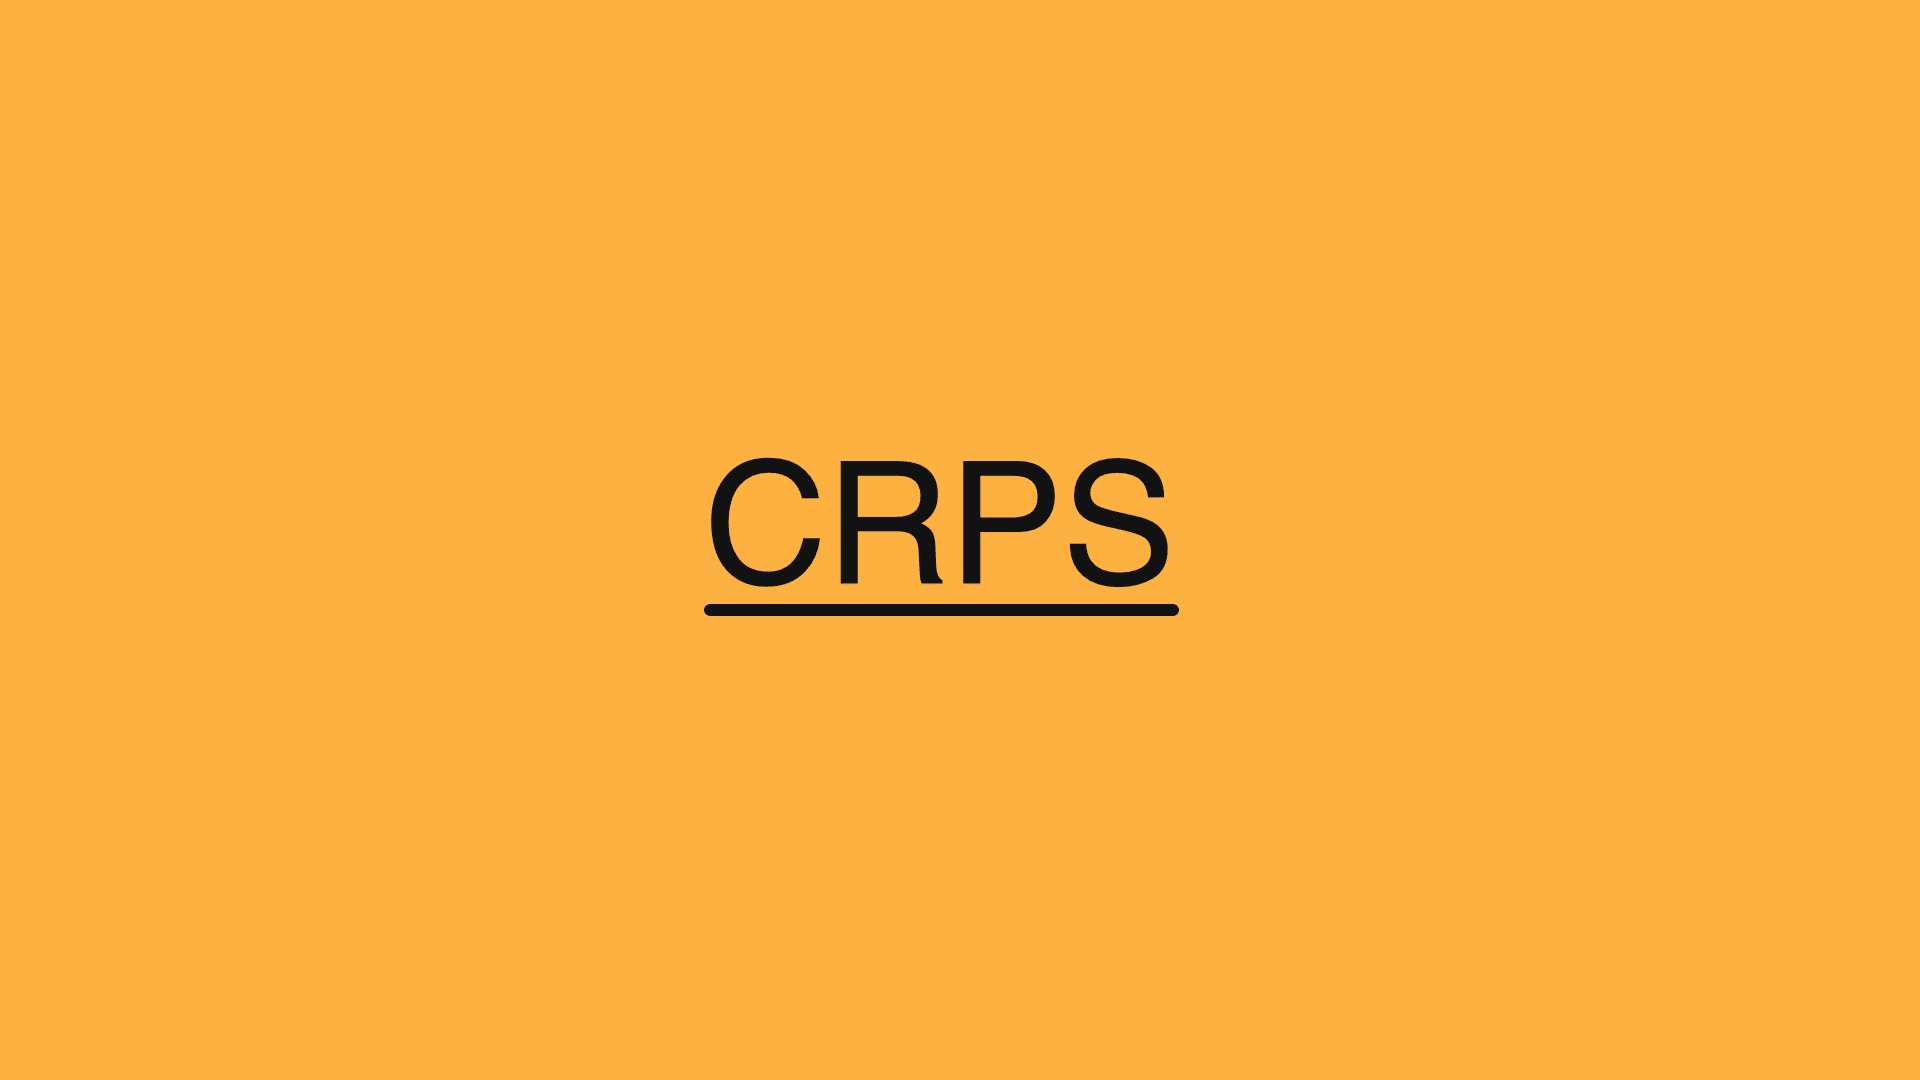 CRPS - Was ist das komplexe regionale Schmerzsyndrom?